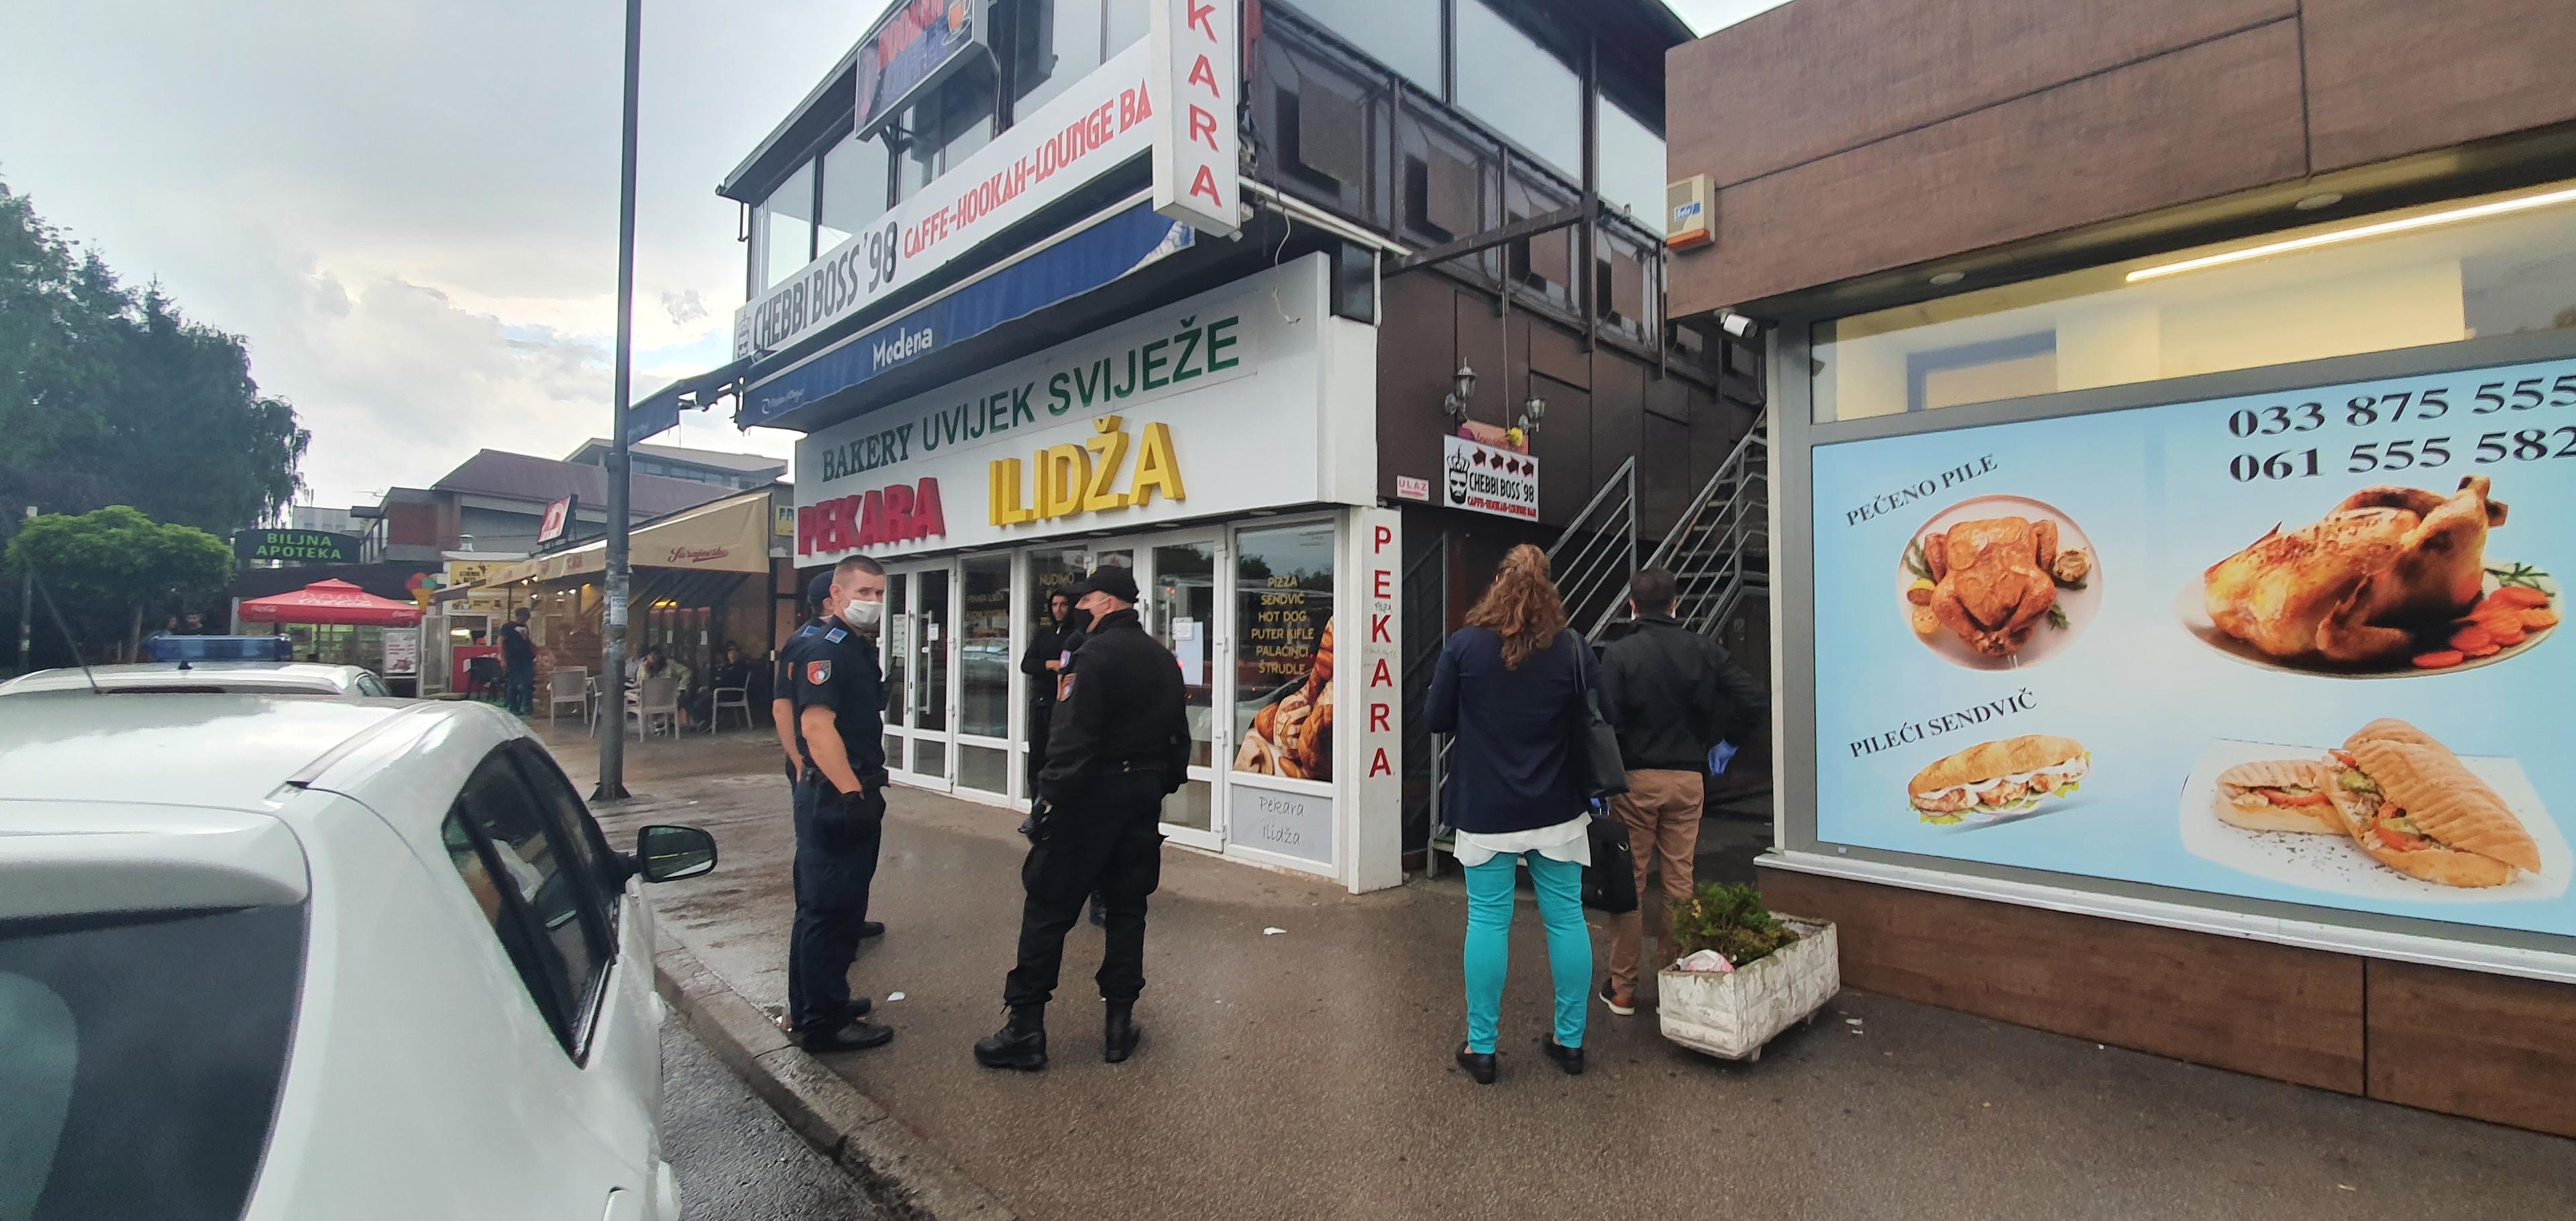 Inspekcija i policija došli da zatvore kafić ilegalnih migranata, na vratima ih dočekala poruka